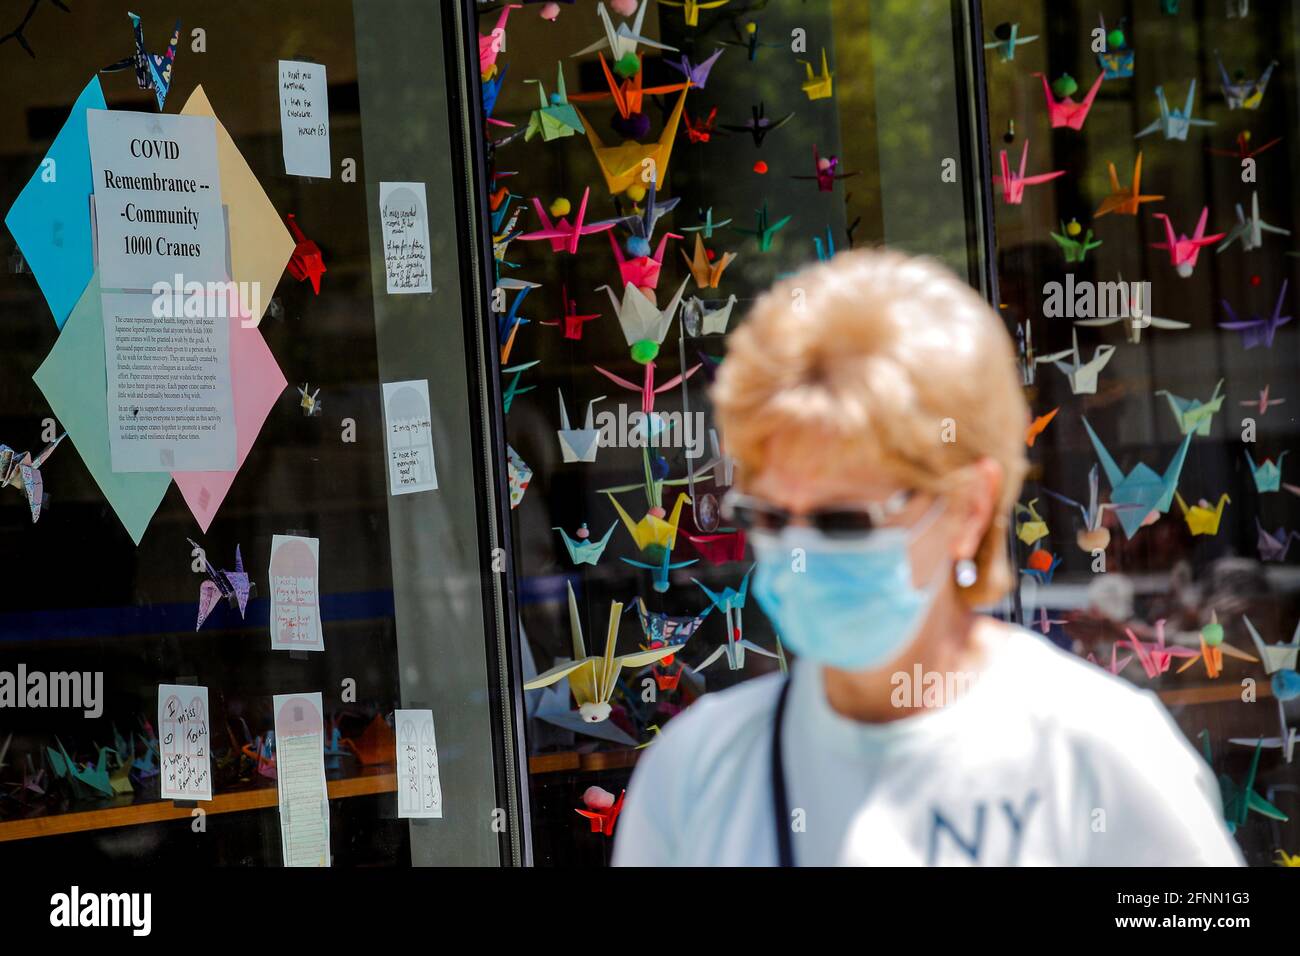 Mille gru di origami sono esposte per onorare le vittime della pandemia della malattia del coronavirus (COVID-19), alla Greenpoint Library di Brooklyn, New York, Stati Uniti, 17 maggio 2021. Foto scattata il 17 maggio 2021. REUTERS/Brendan McDermid Foto Stock